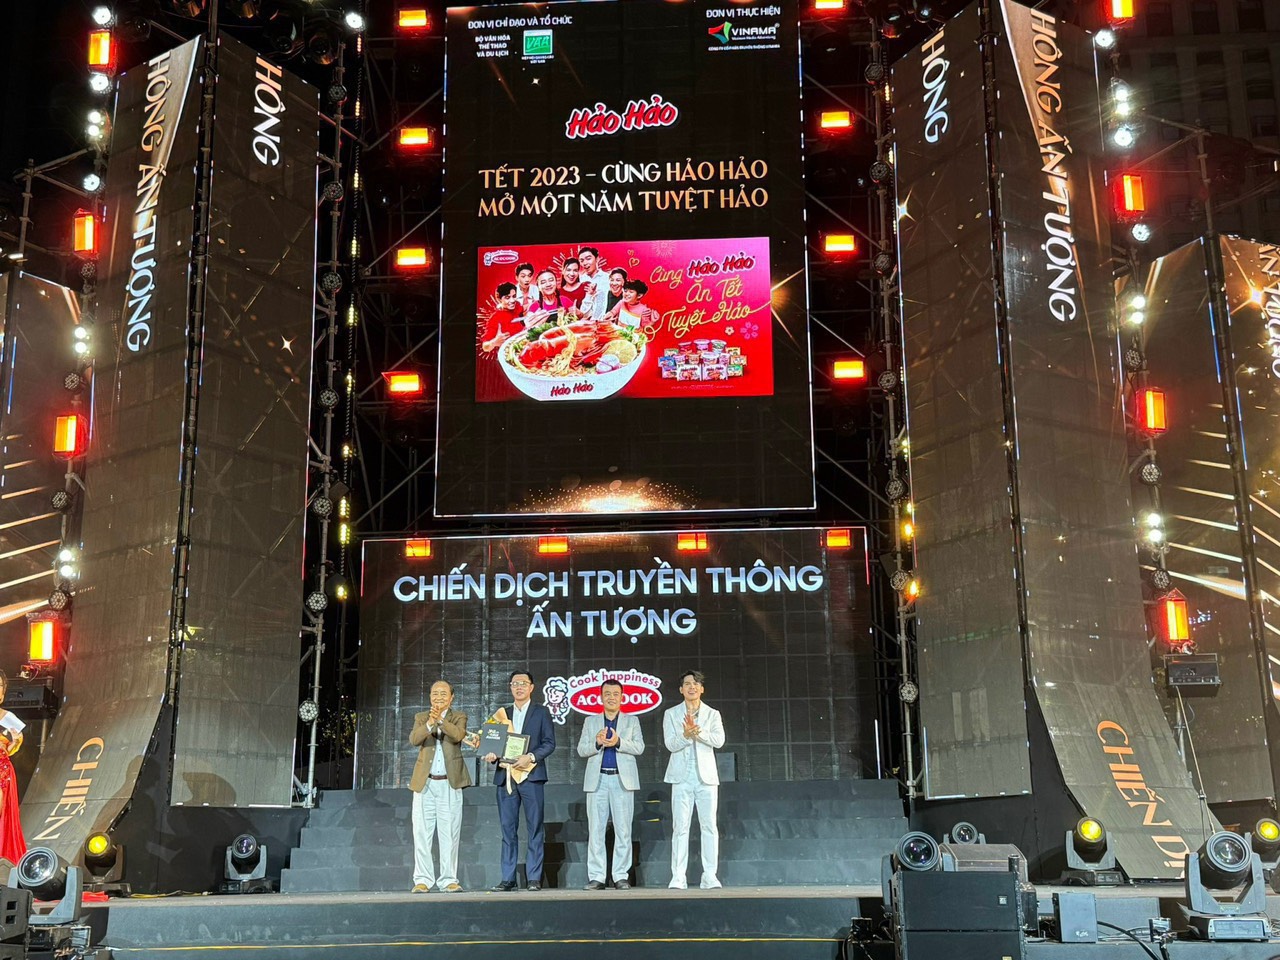 20 thương hiệu hàng đầu Việt Nam năm 2023: Samsung giữ vững ngôi vương, Hảo Hảo tiến lên 9 hạng, Tiktok tăng điểm mạnh nhất - Ảnh 5.